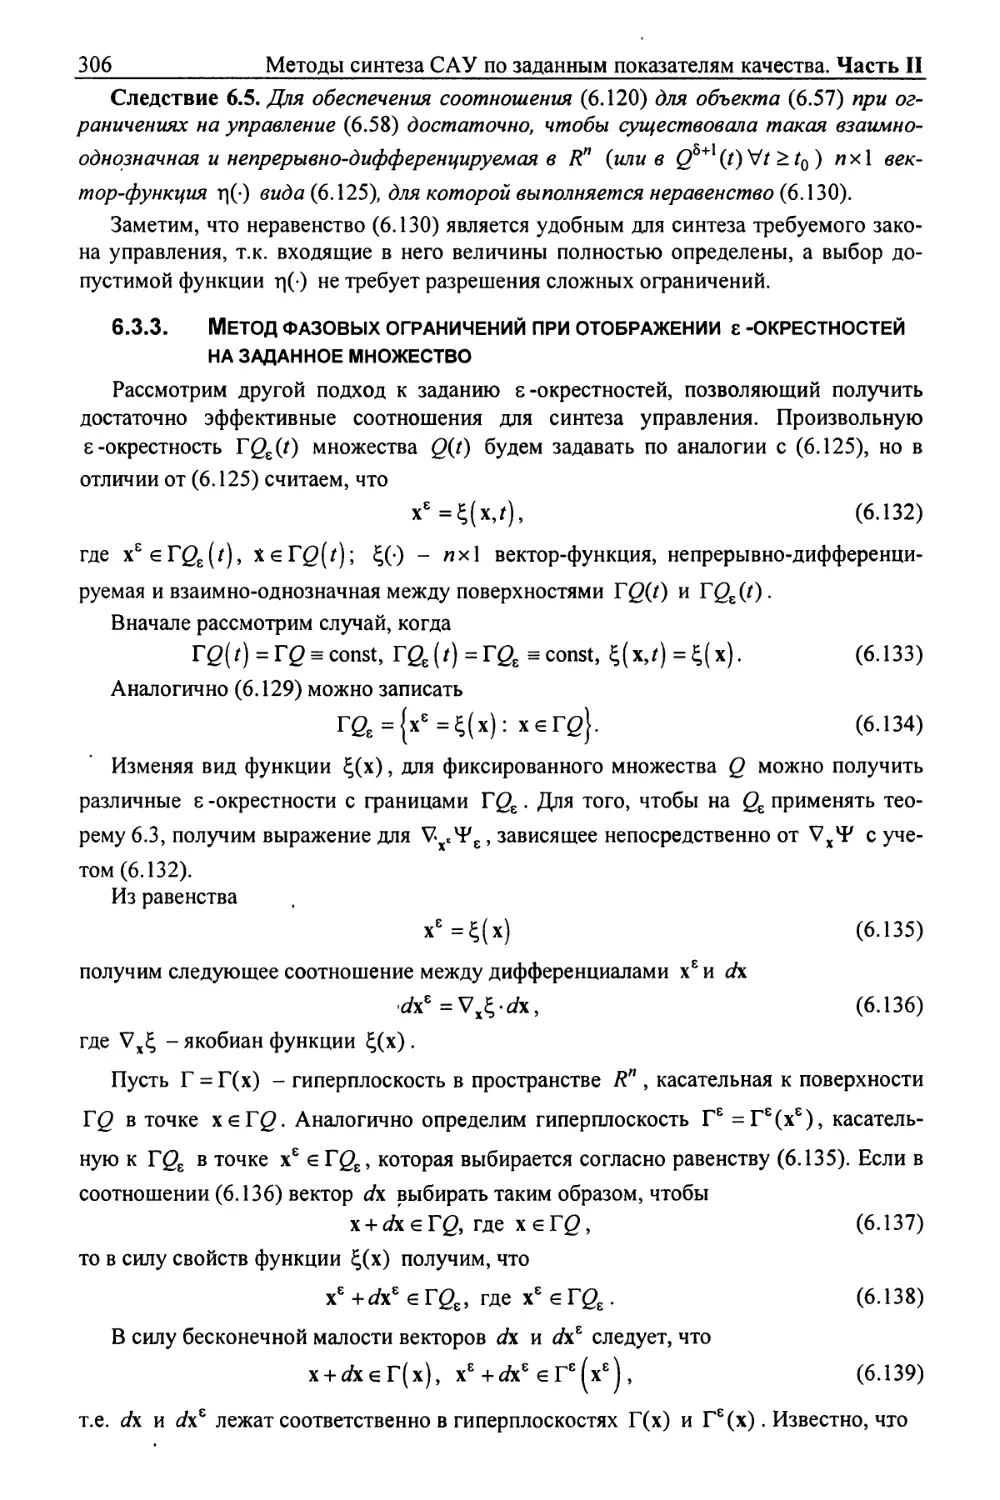 6.3.3. Метод фазовых ограничений при отображении ε-окрестностей на заданное множество